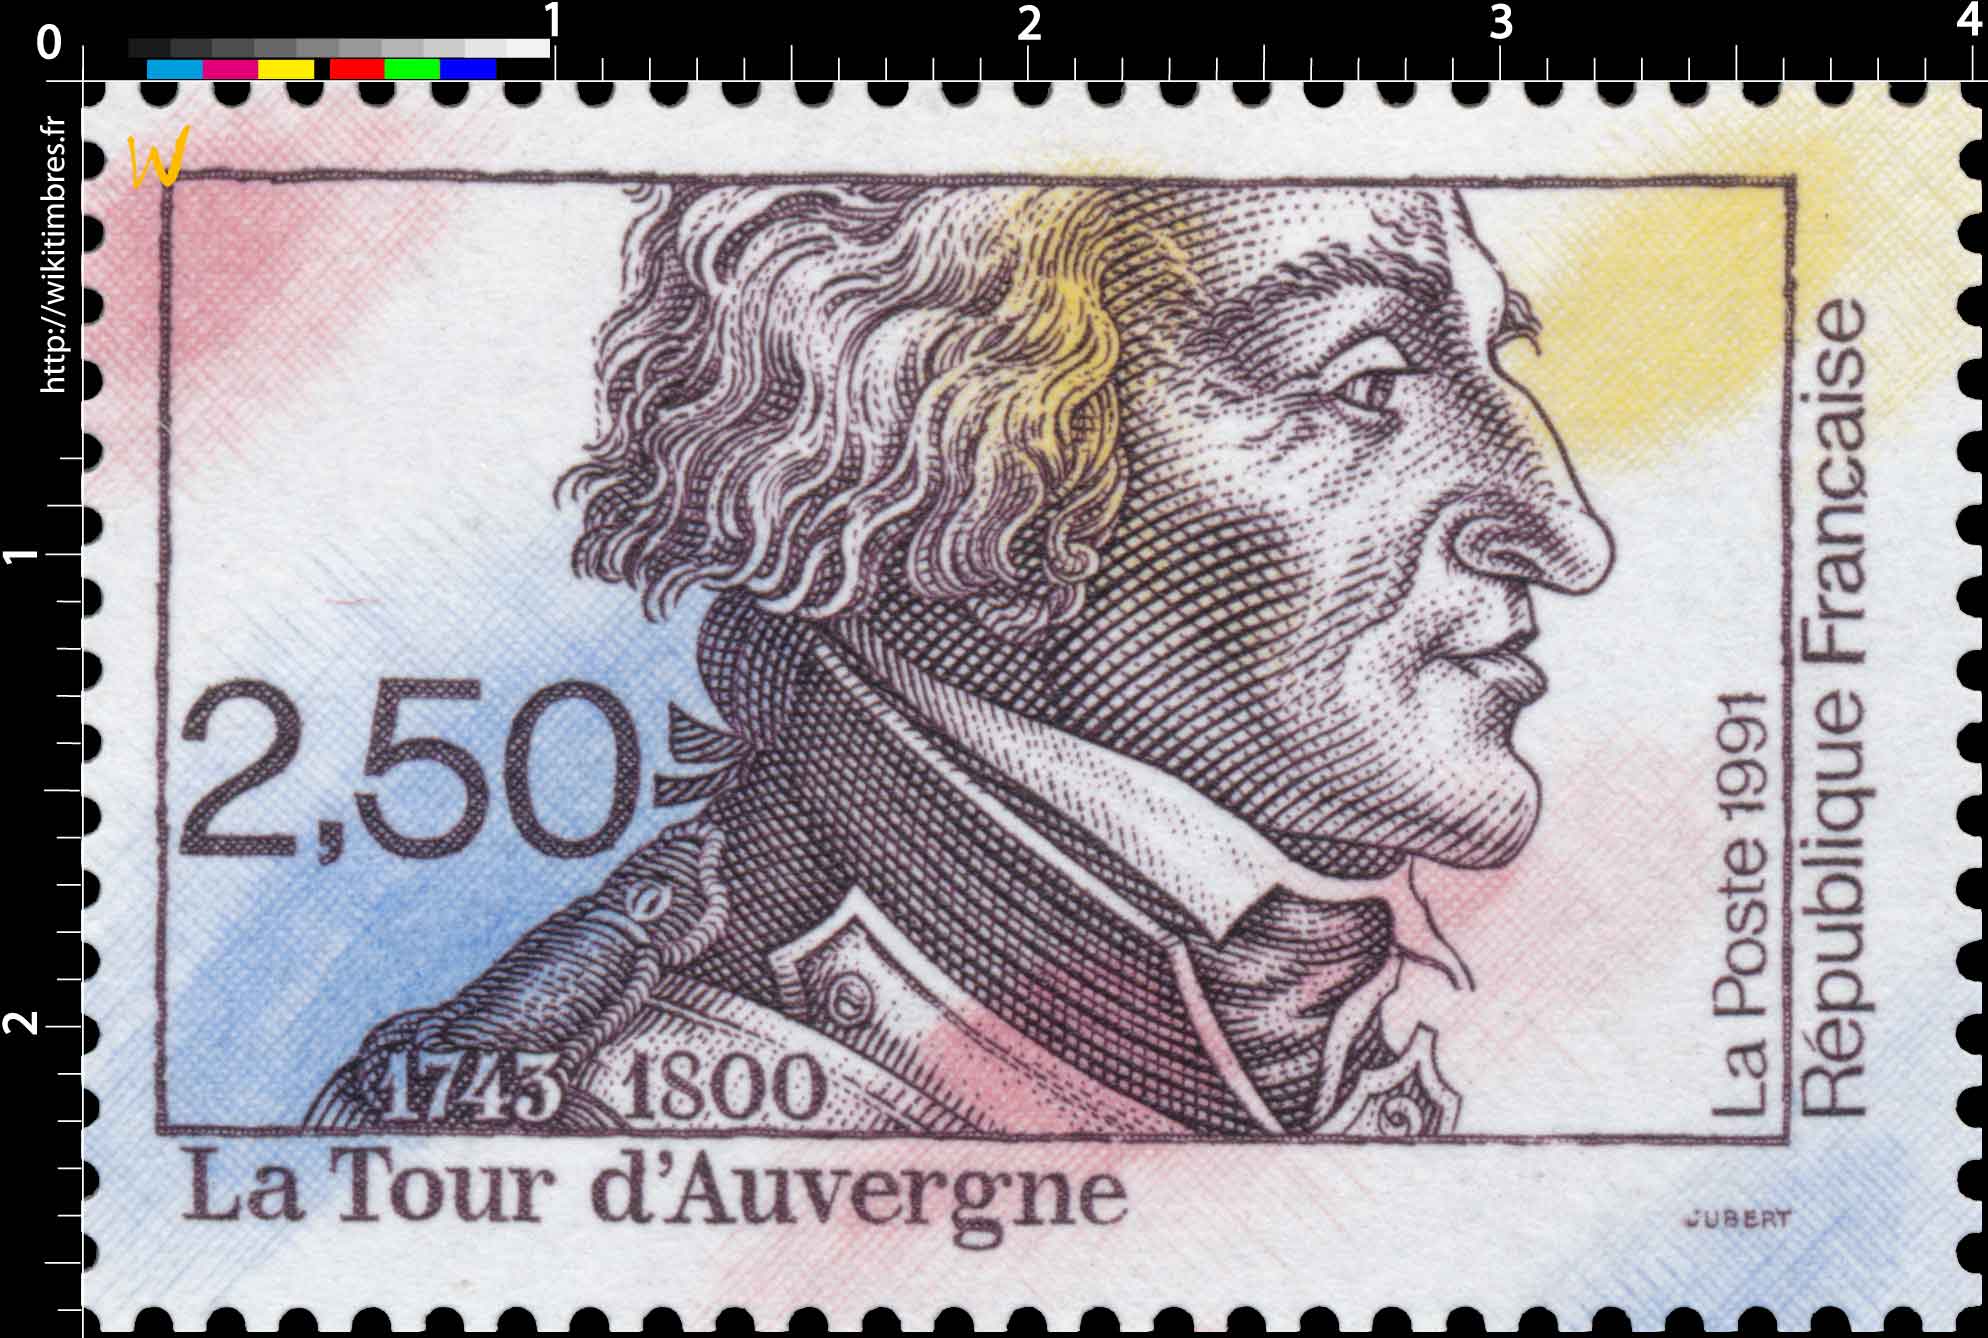 1991 La Tour d'Auvergne 1743-1800